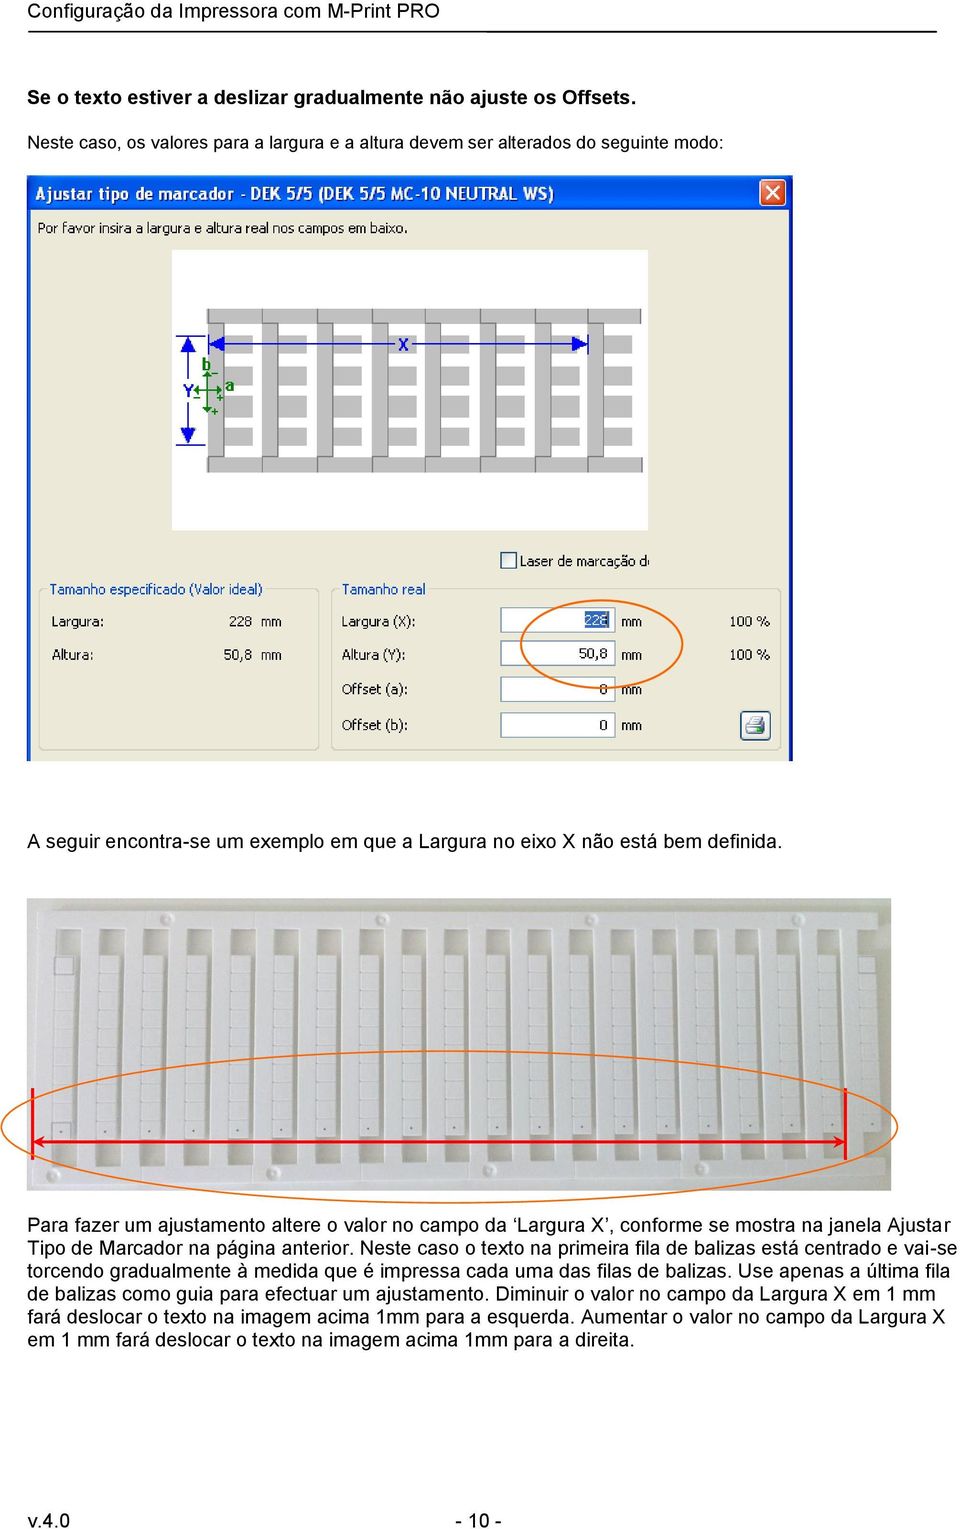 Para fazer um ajustamento altere o valor no campo da Largura X, conforme se mostra na janela Ajustar Tipo de Marcador na página anterior.